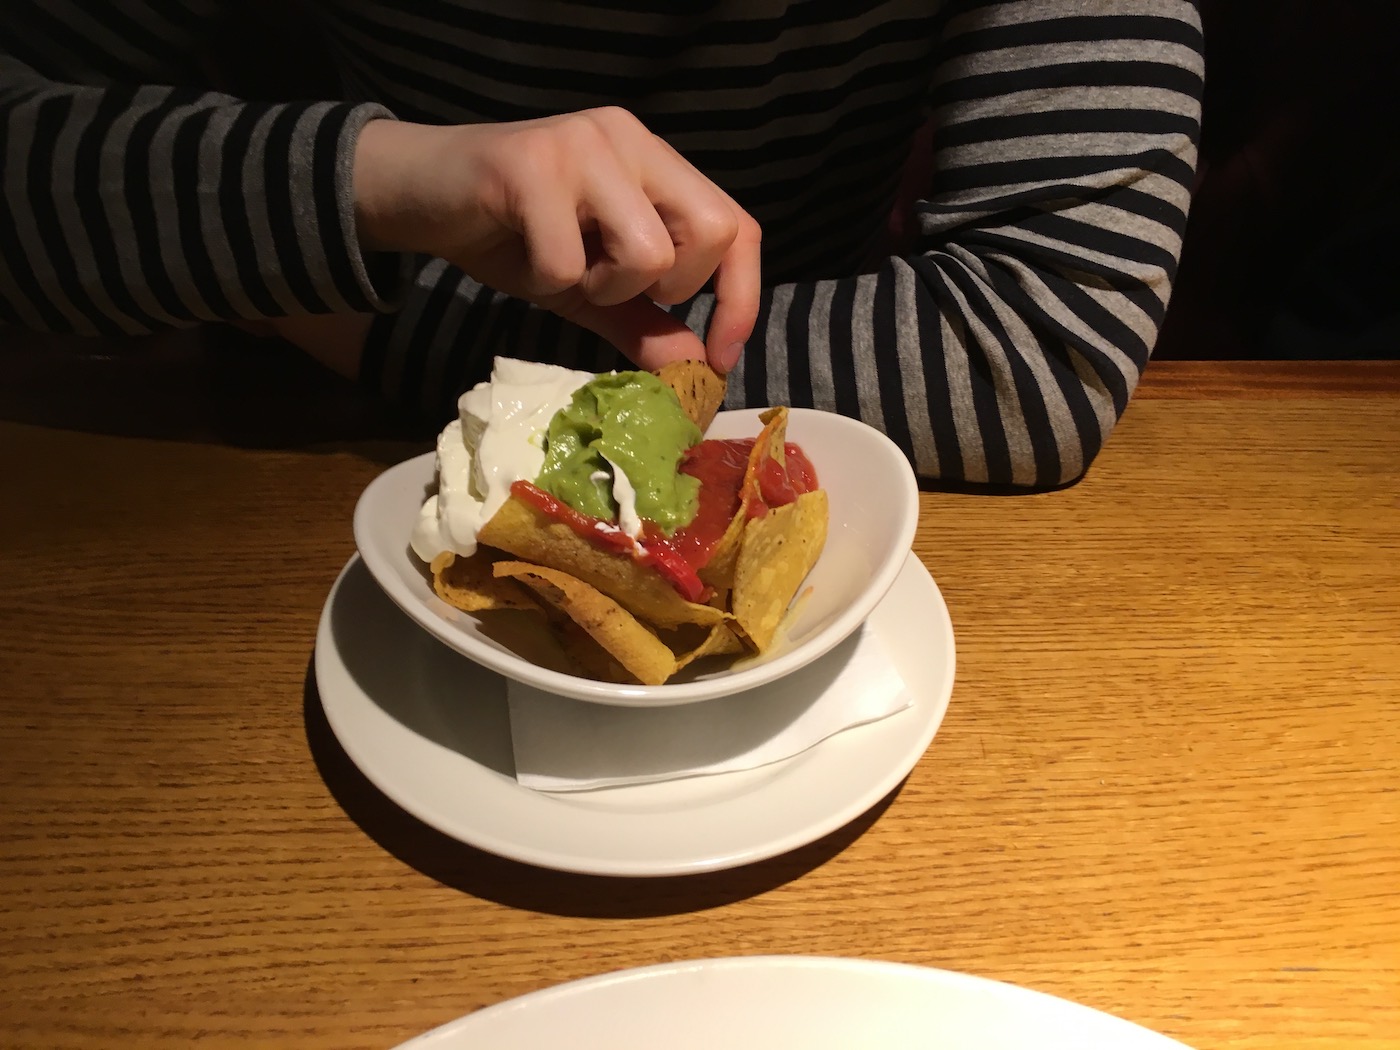 Nachos at a restaurant in london 2015